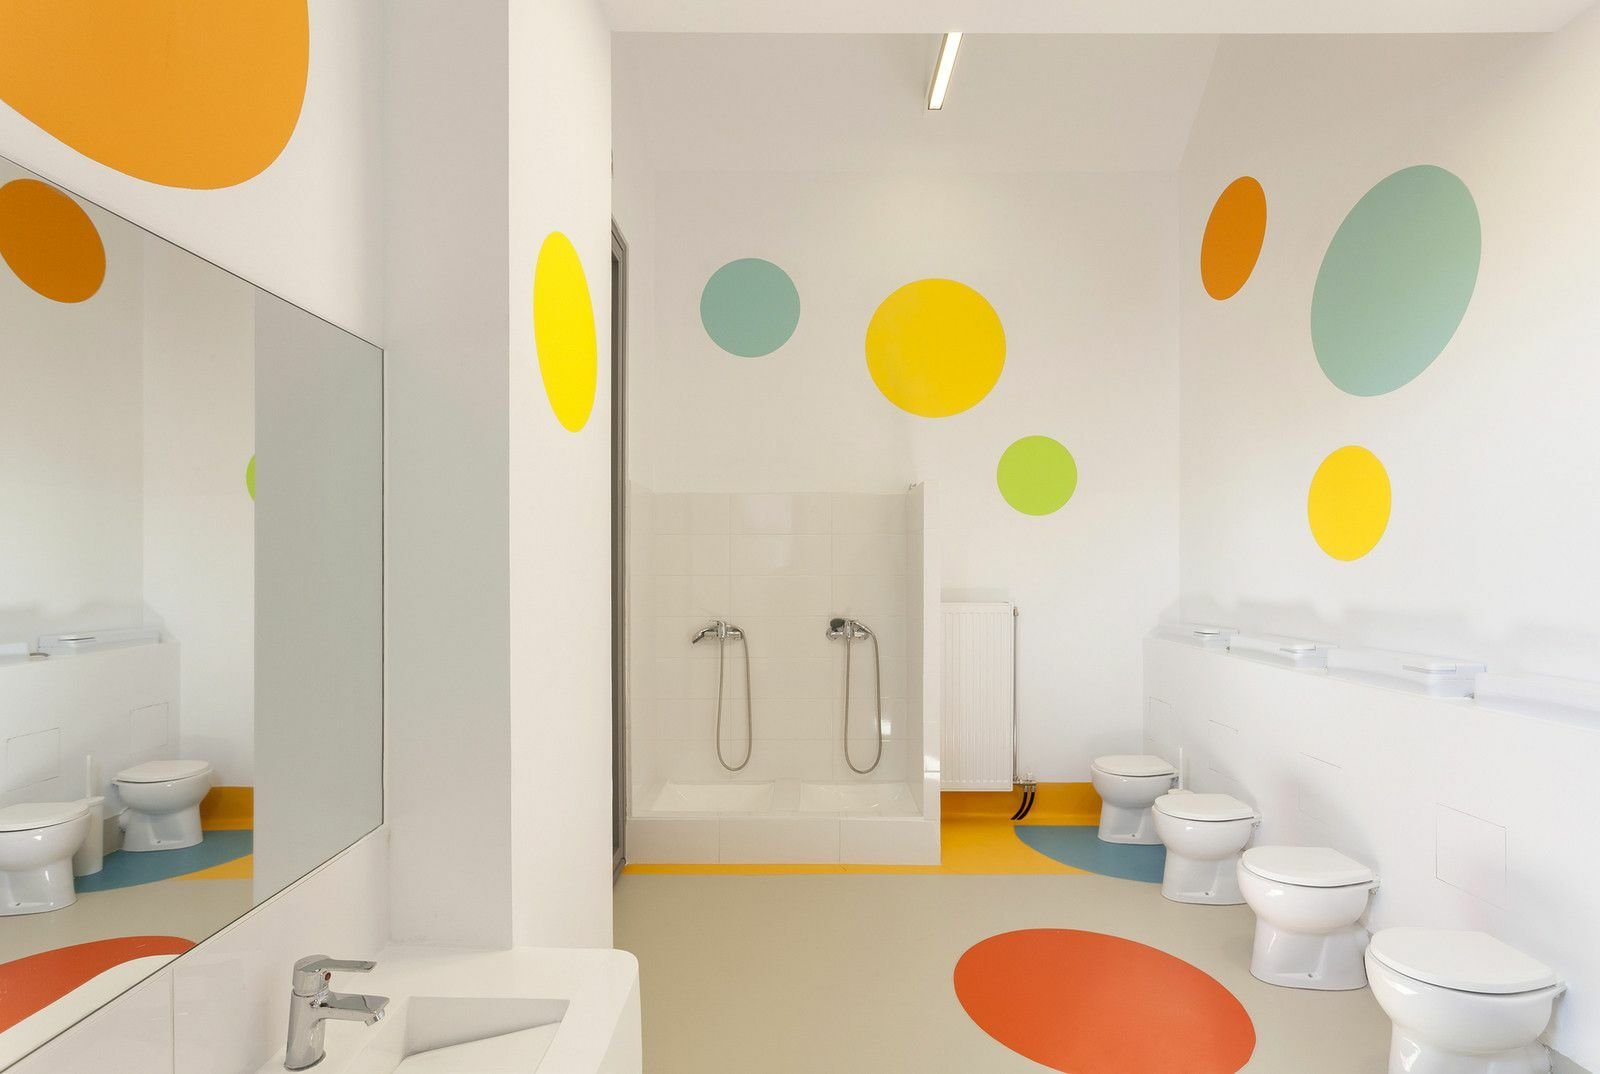 Красочный дизайн туалета для детского сада Шикацу | Акриловая твердая поверхность